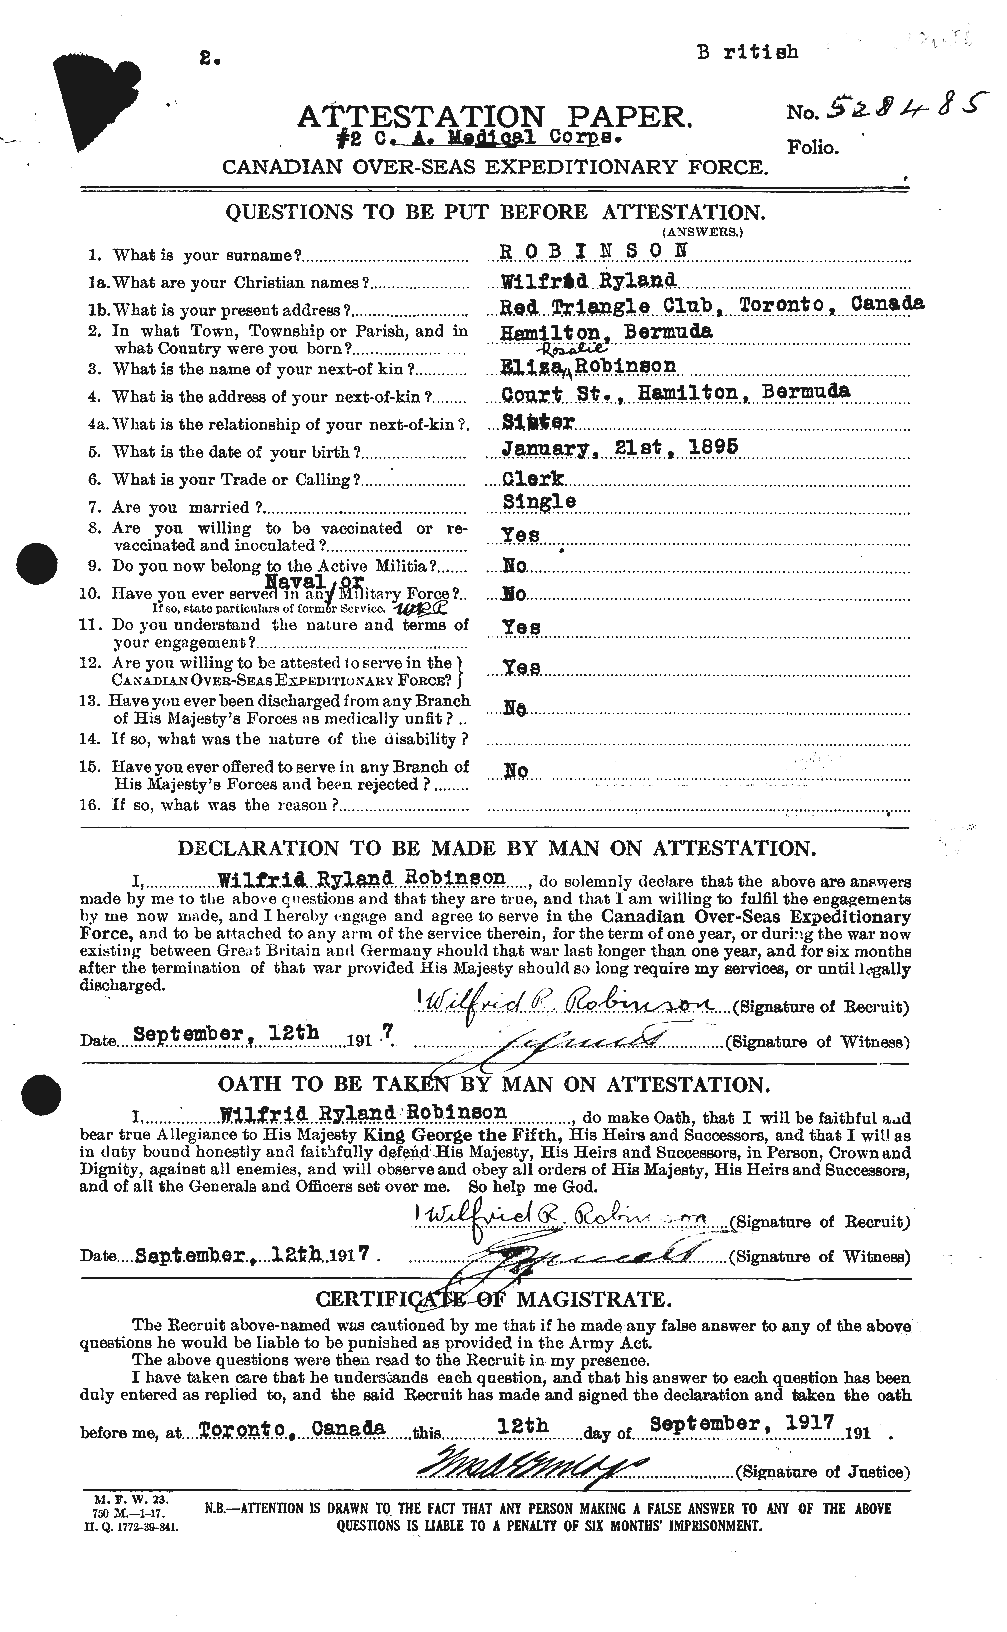 Dossiers du Personnel de la Première Guerre mondiale - CEC 613937a